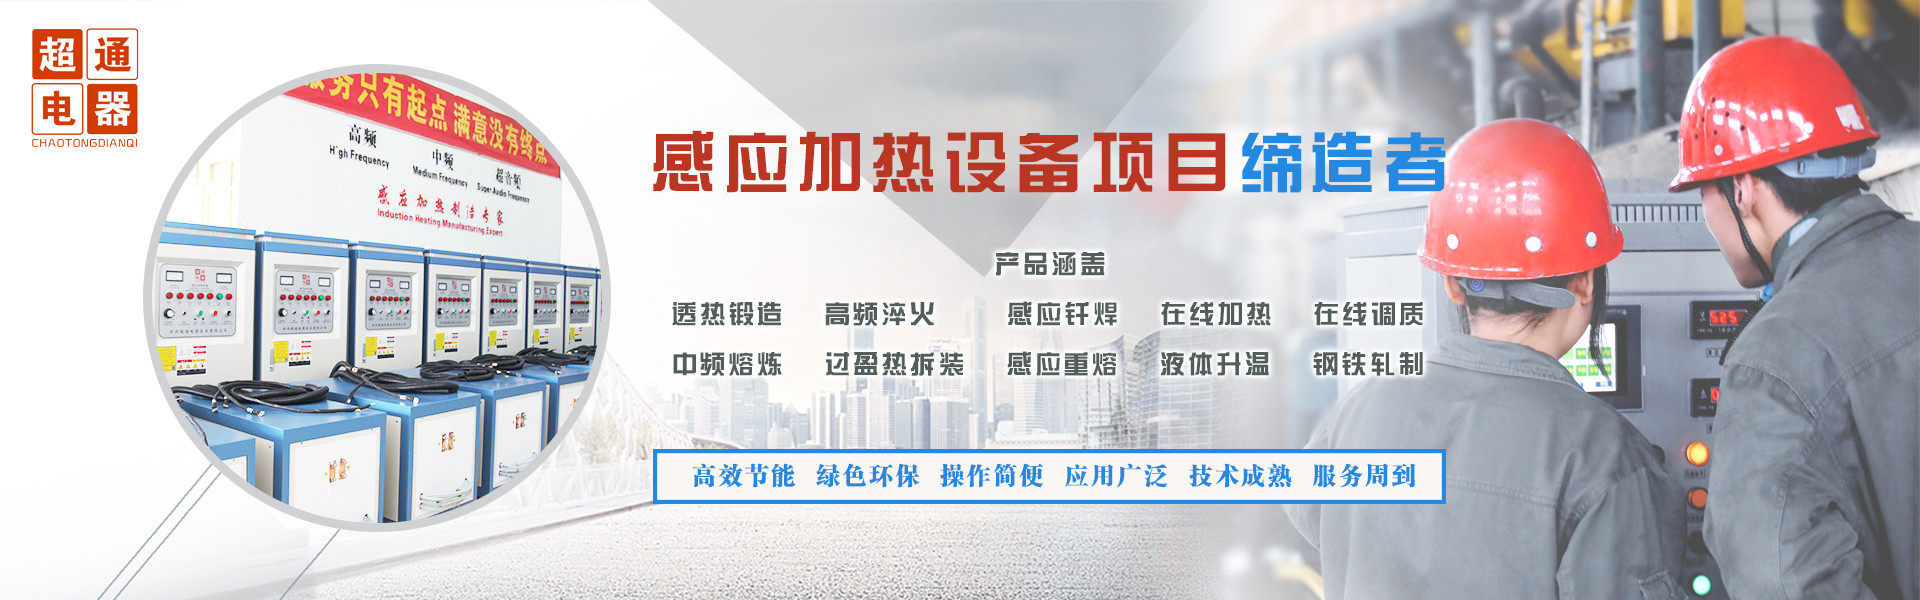 郑州超通电器技术有限公司